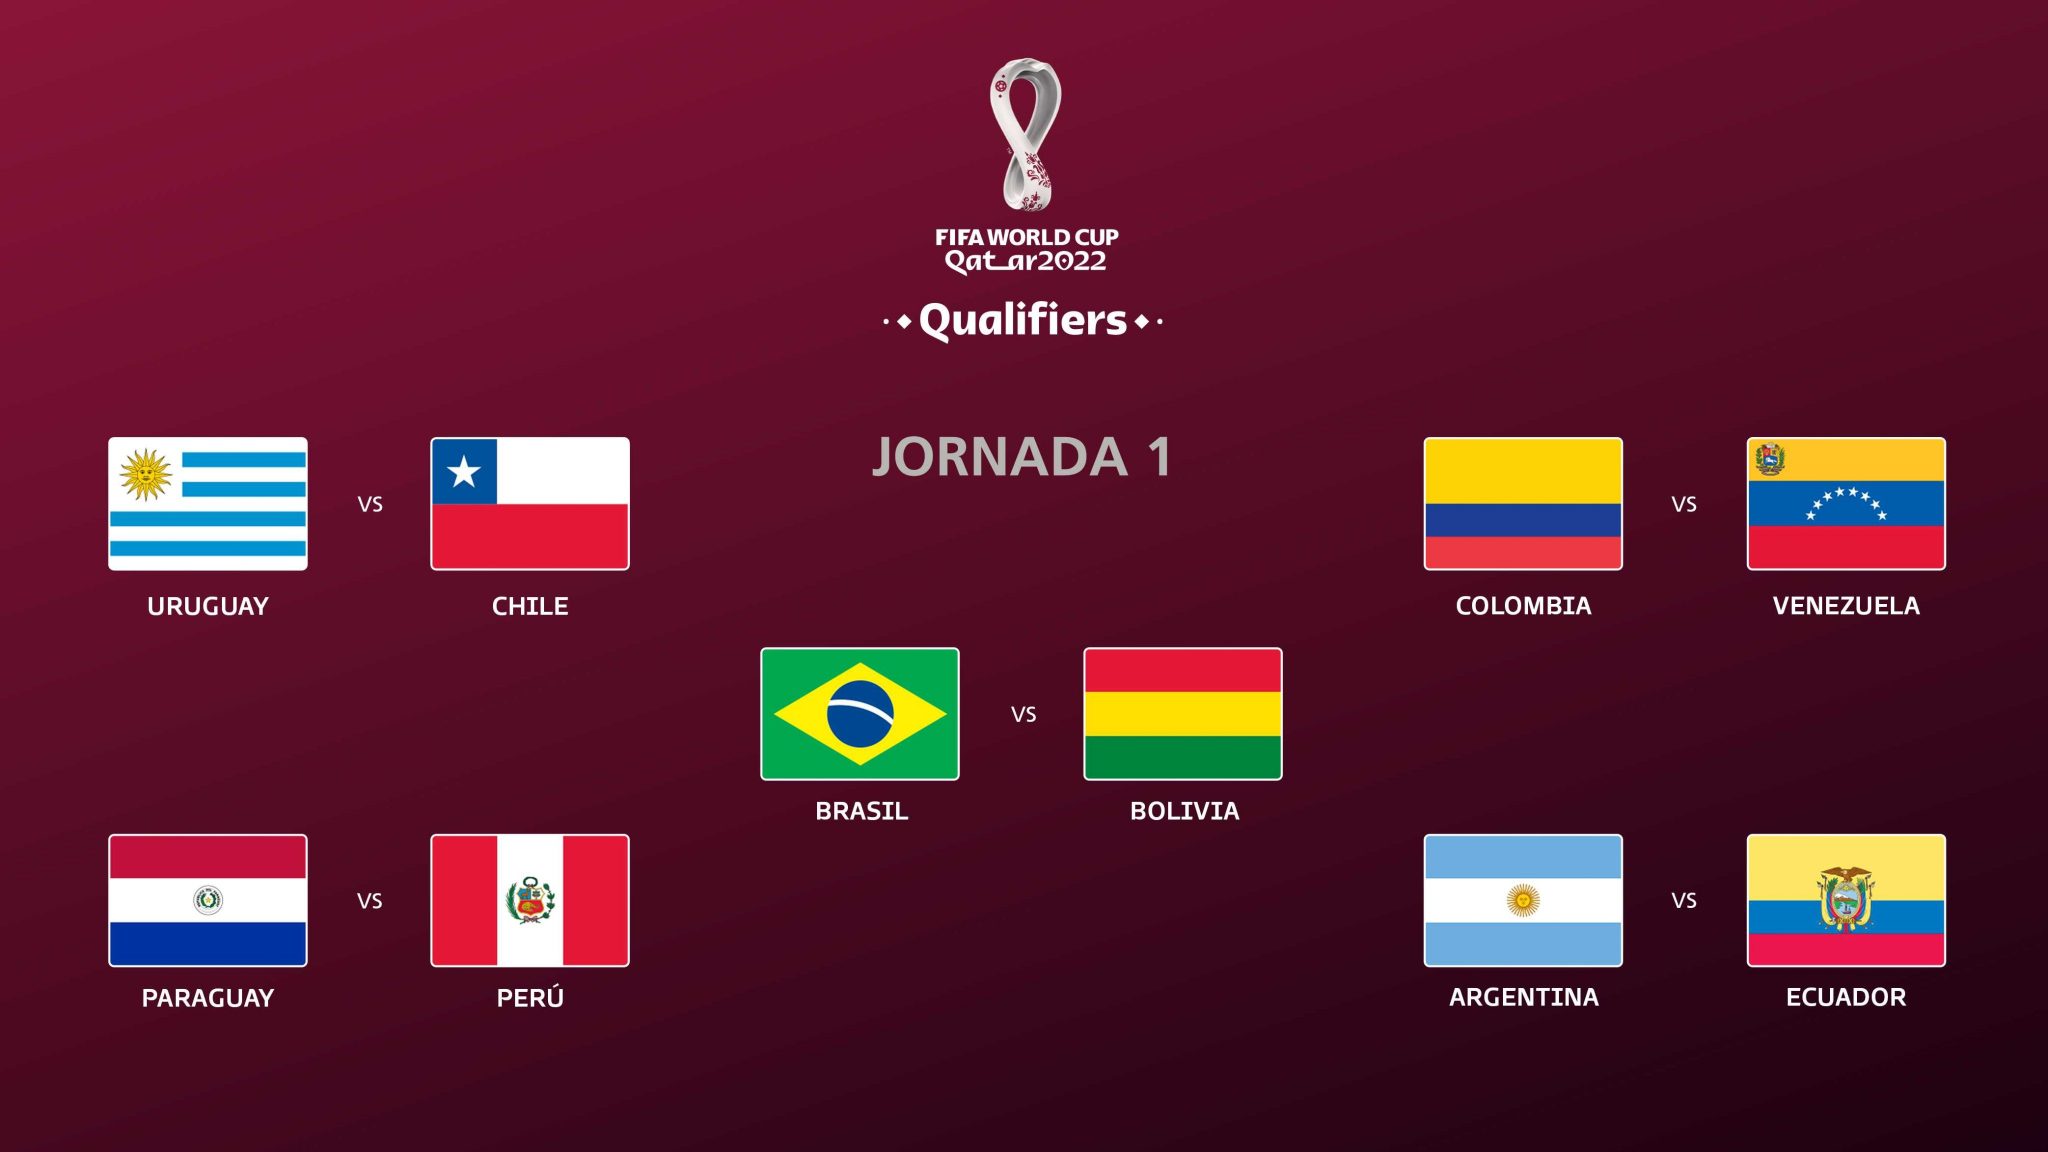 Calendario Completo Del Mundial De Qatar 2022 Futbol Libre El Salvador